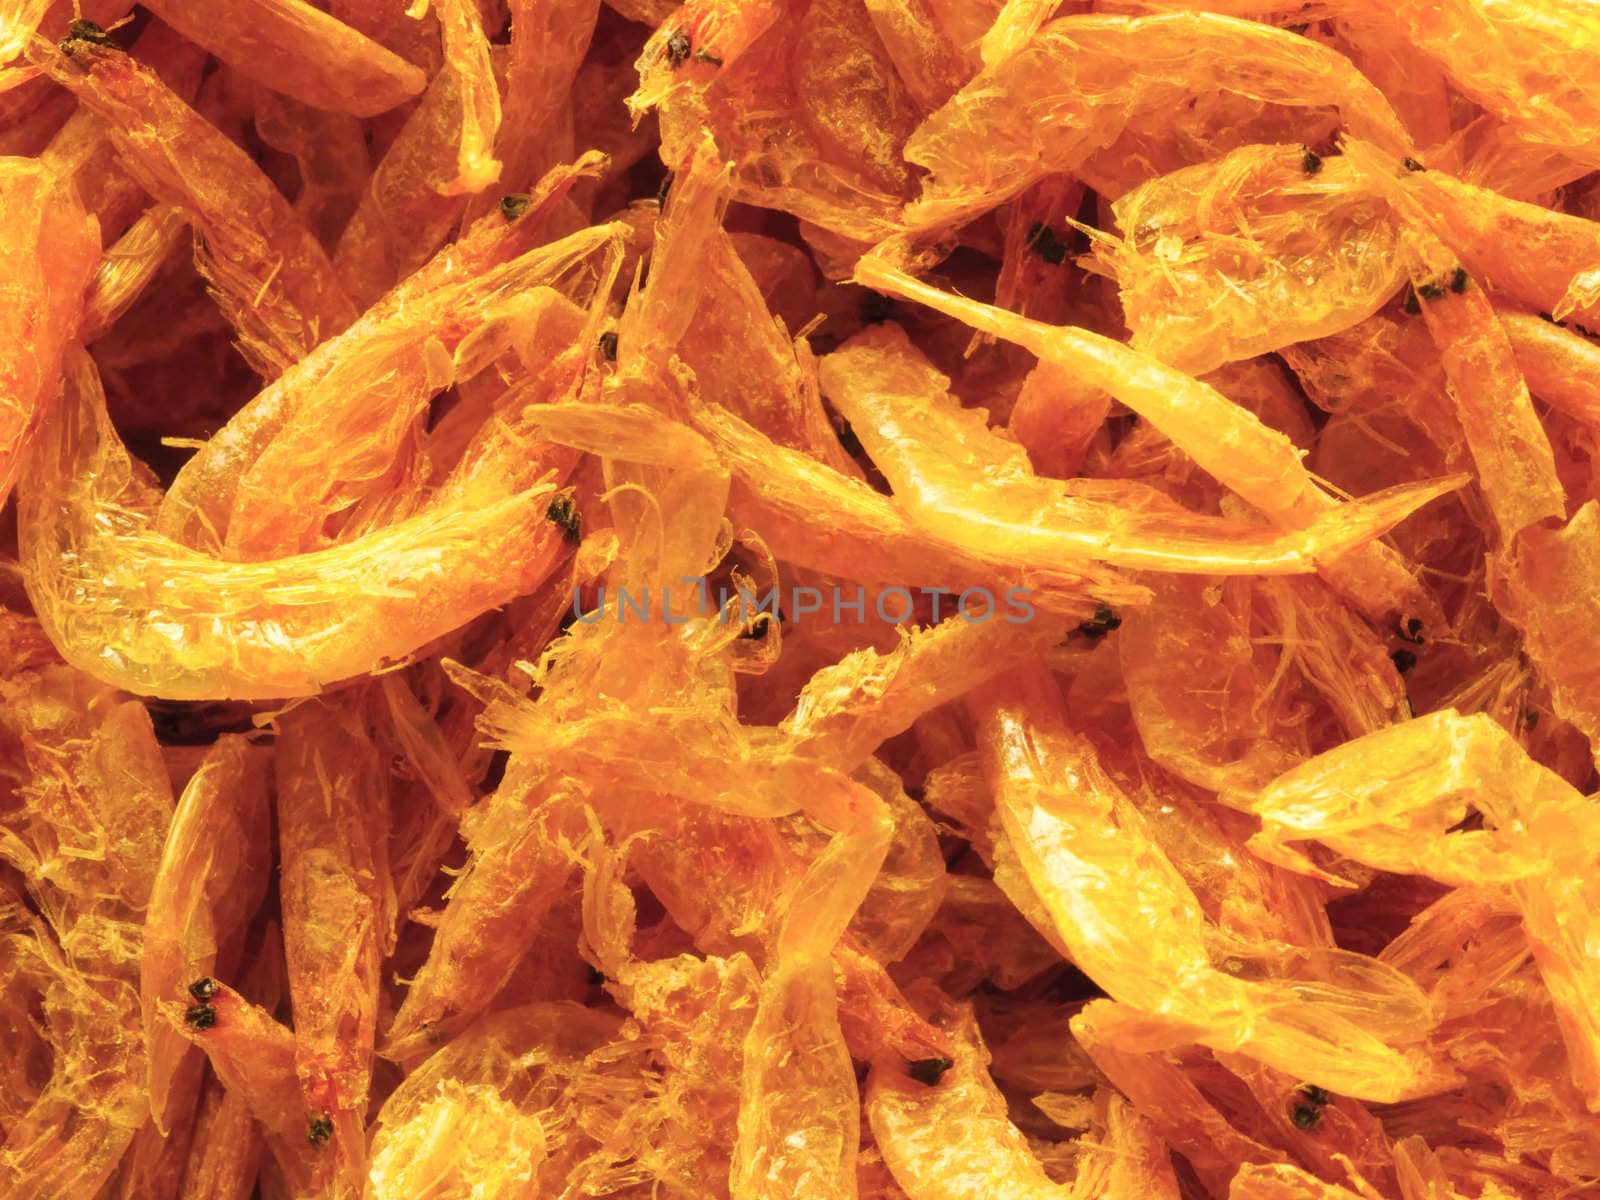 dried shrimps by zkruger